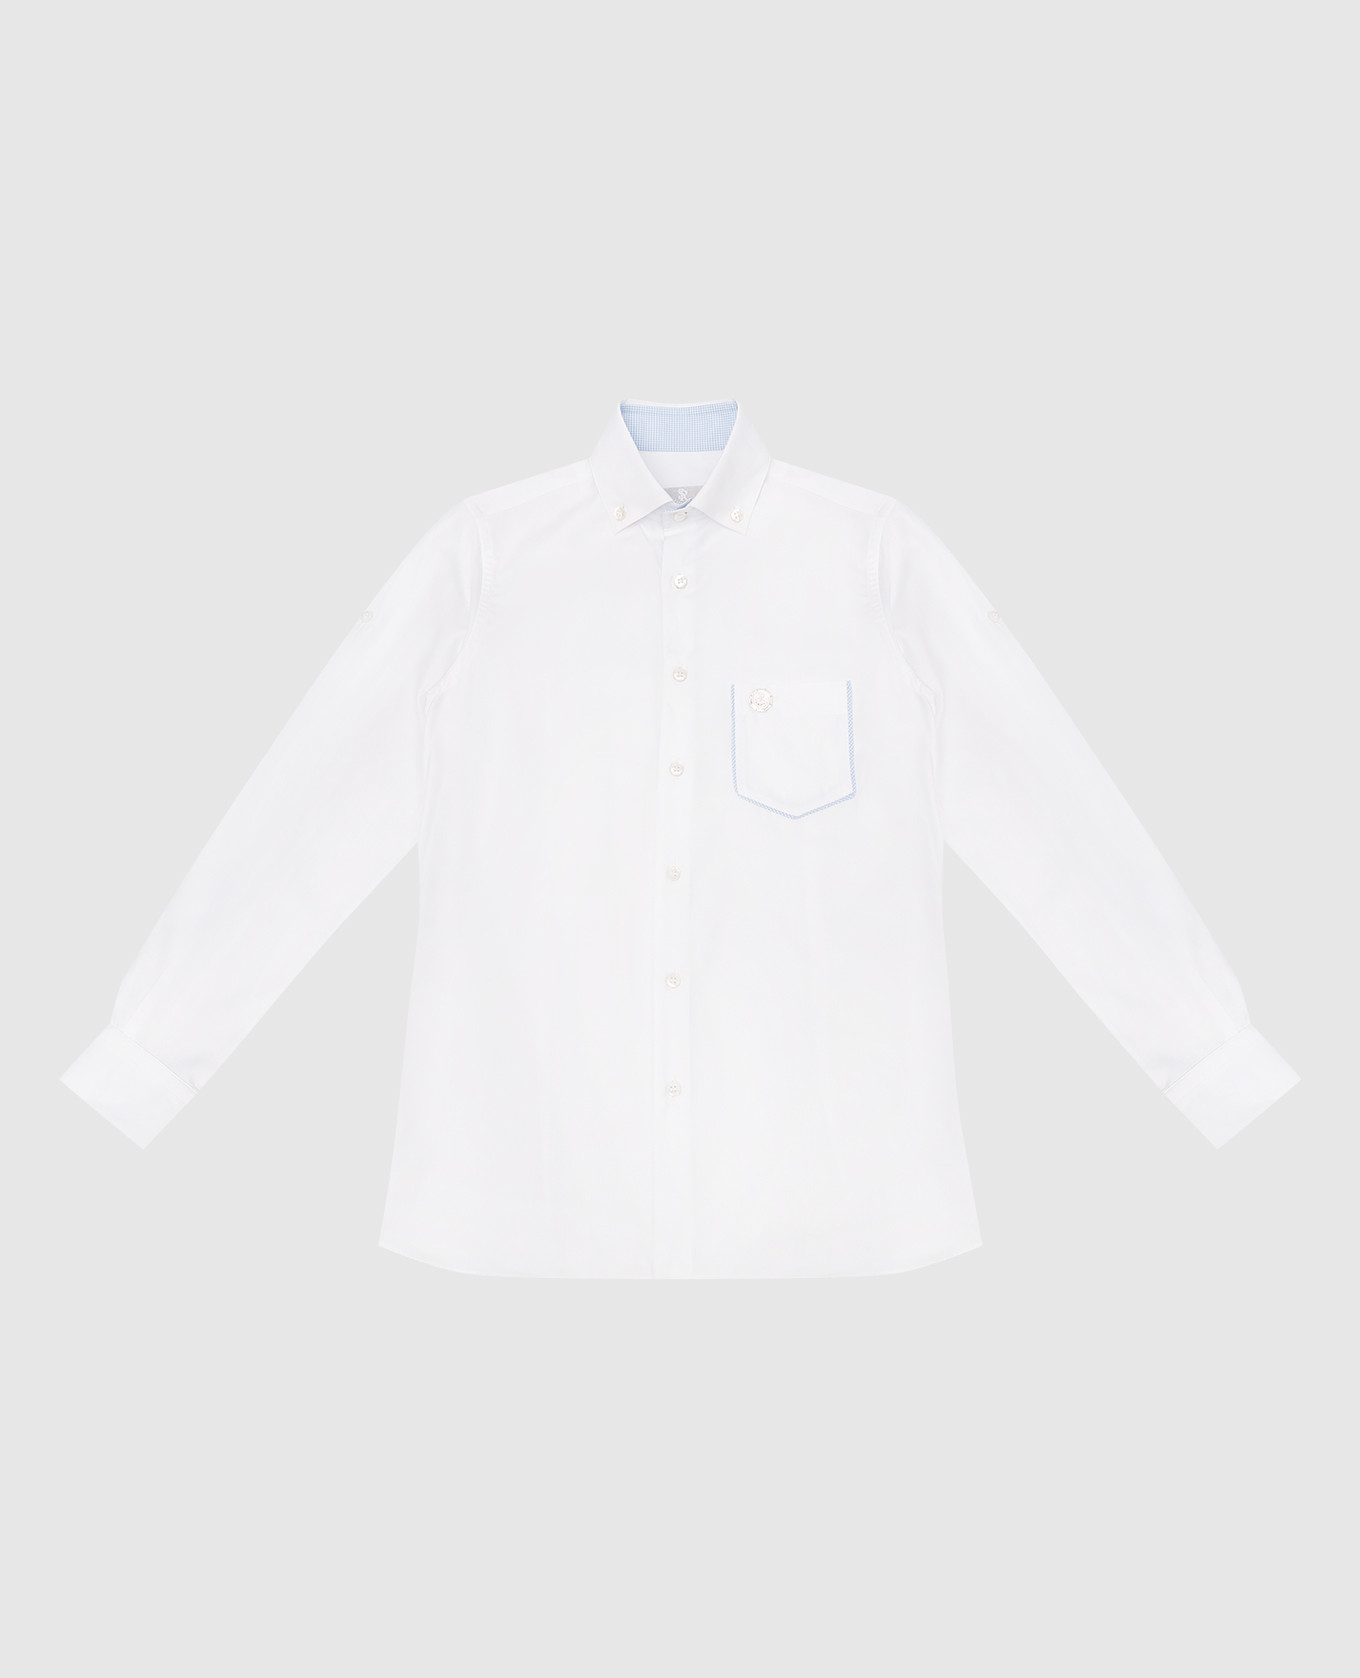 Children's white shirt